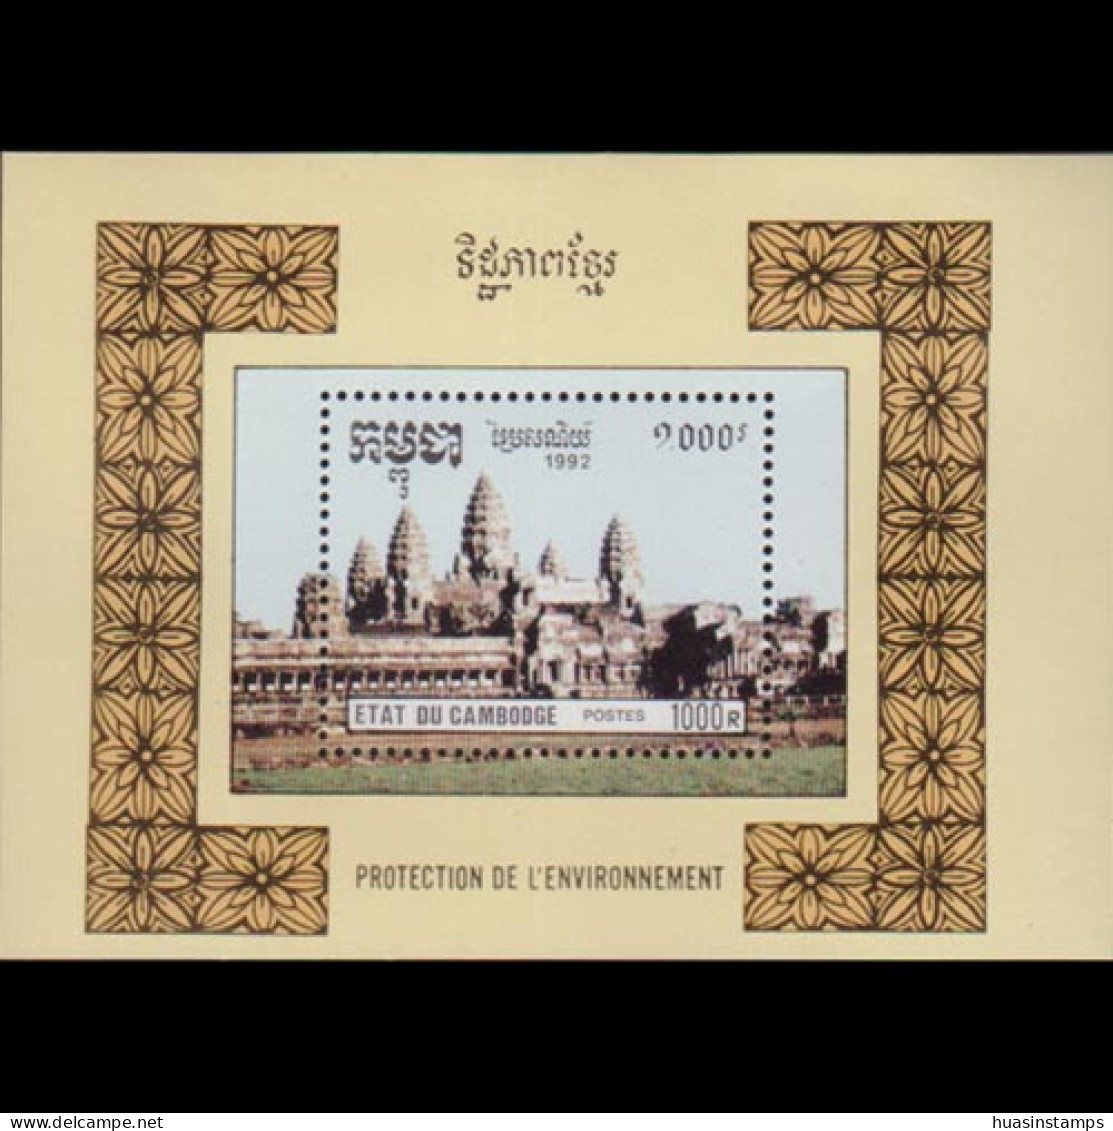 CAMBODIA 1992 - Scott# 1235 S/S Angkor Wat MNH - Cambodge